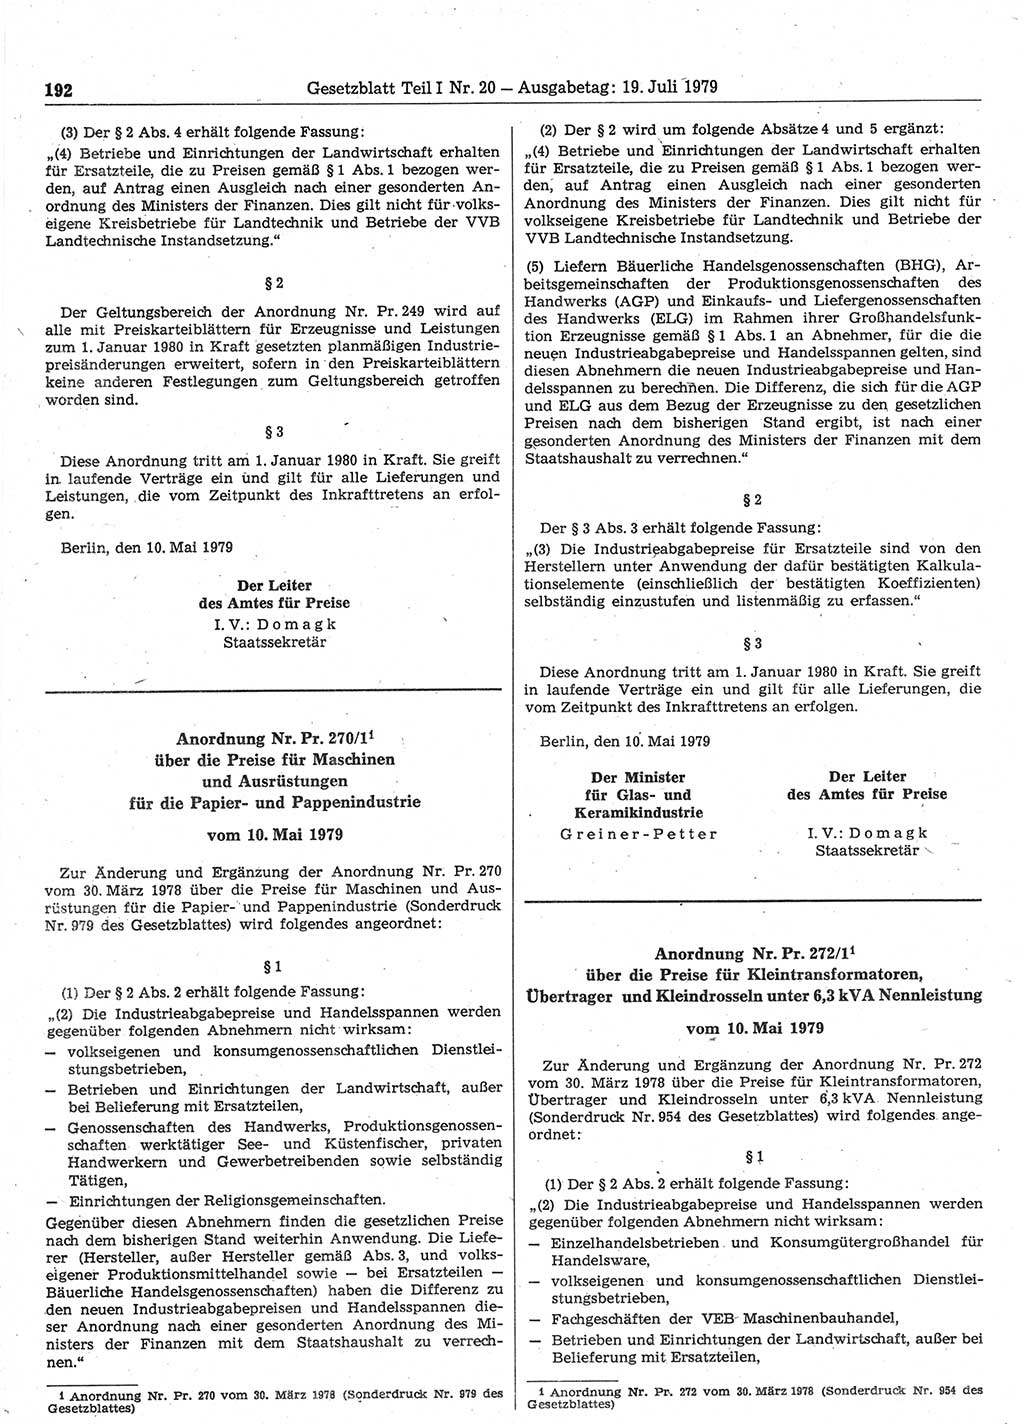 Gesetzblatt (GBl.) der Deutschen Demokratischen Republik (DDR) Teil Ⅰ 1979, Seite 192 (GBl. DDR Ⅰ 1979, S. 192)